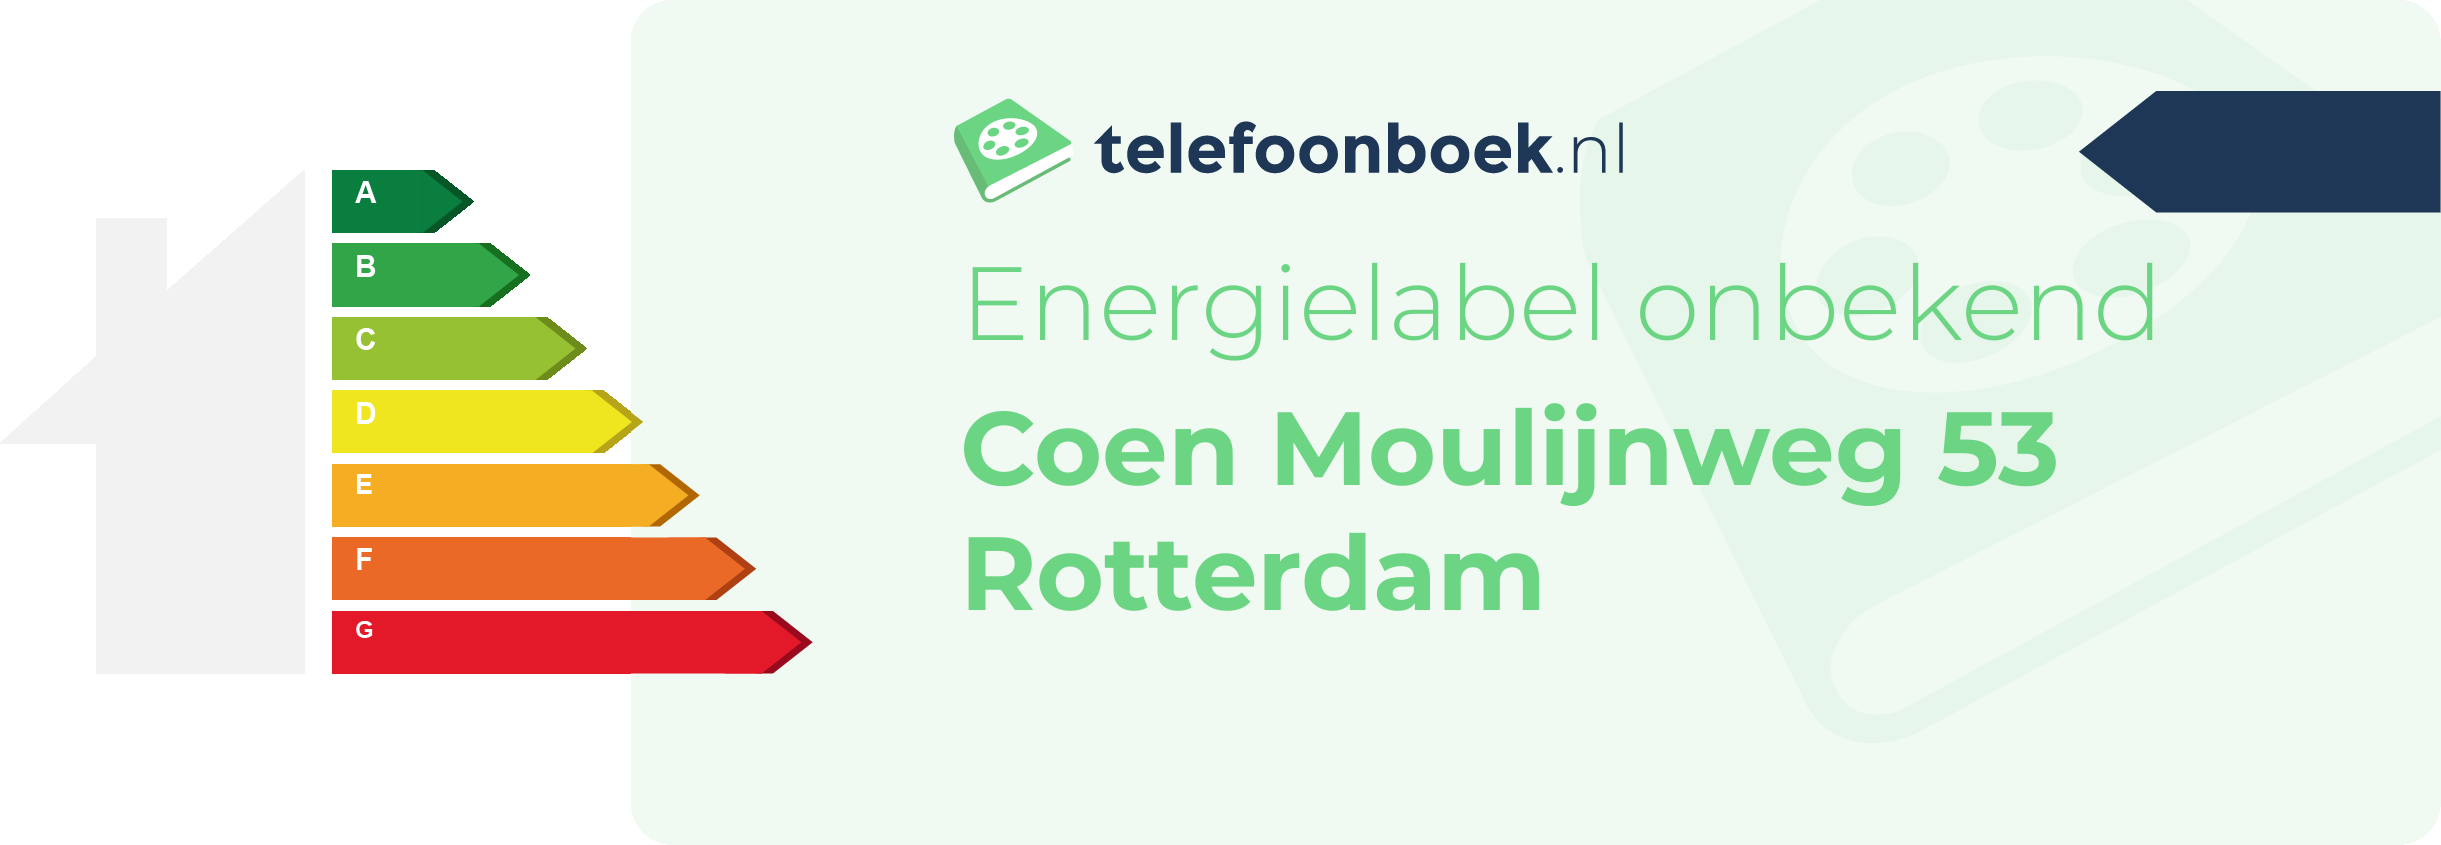 Energielabel Coen Moulijnweg 53 Rotterdam